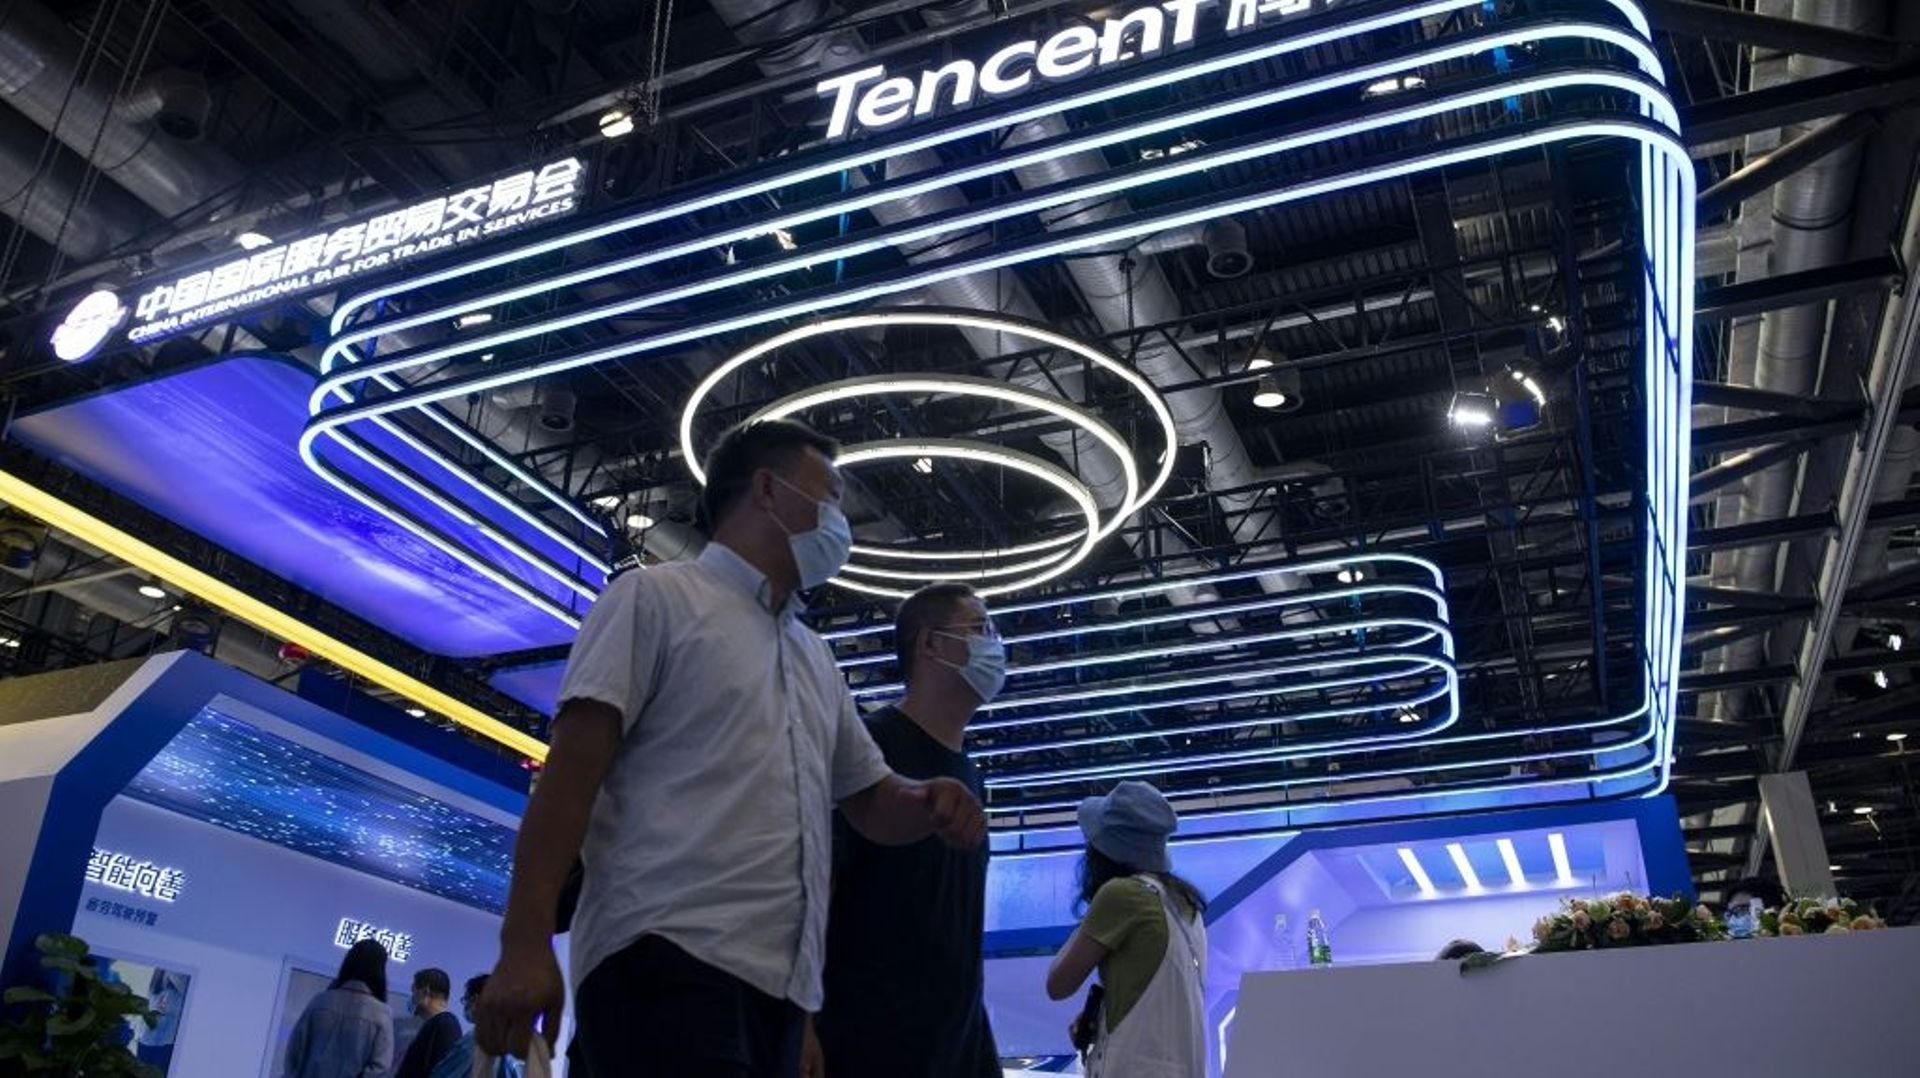 Le stand du groupe Tencent au Salon international du commerce des services (CIFTIS), à Pékin, le 6 septembre 2021